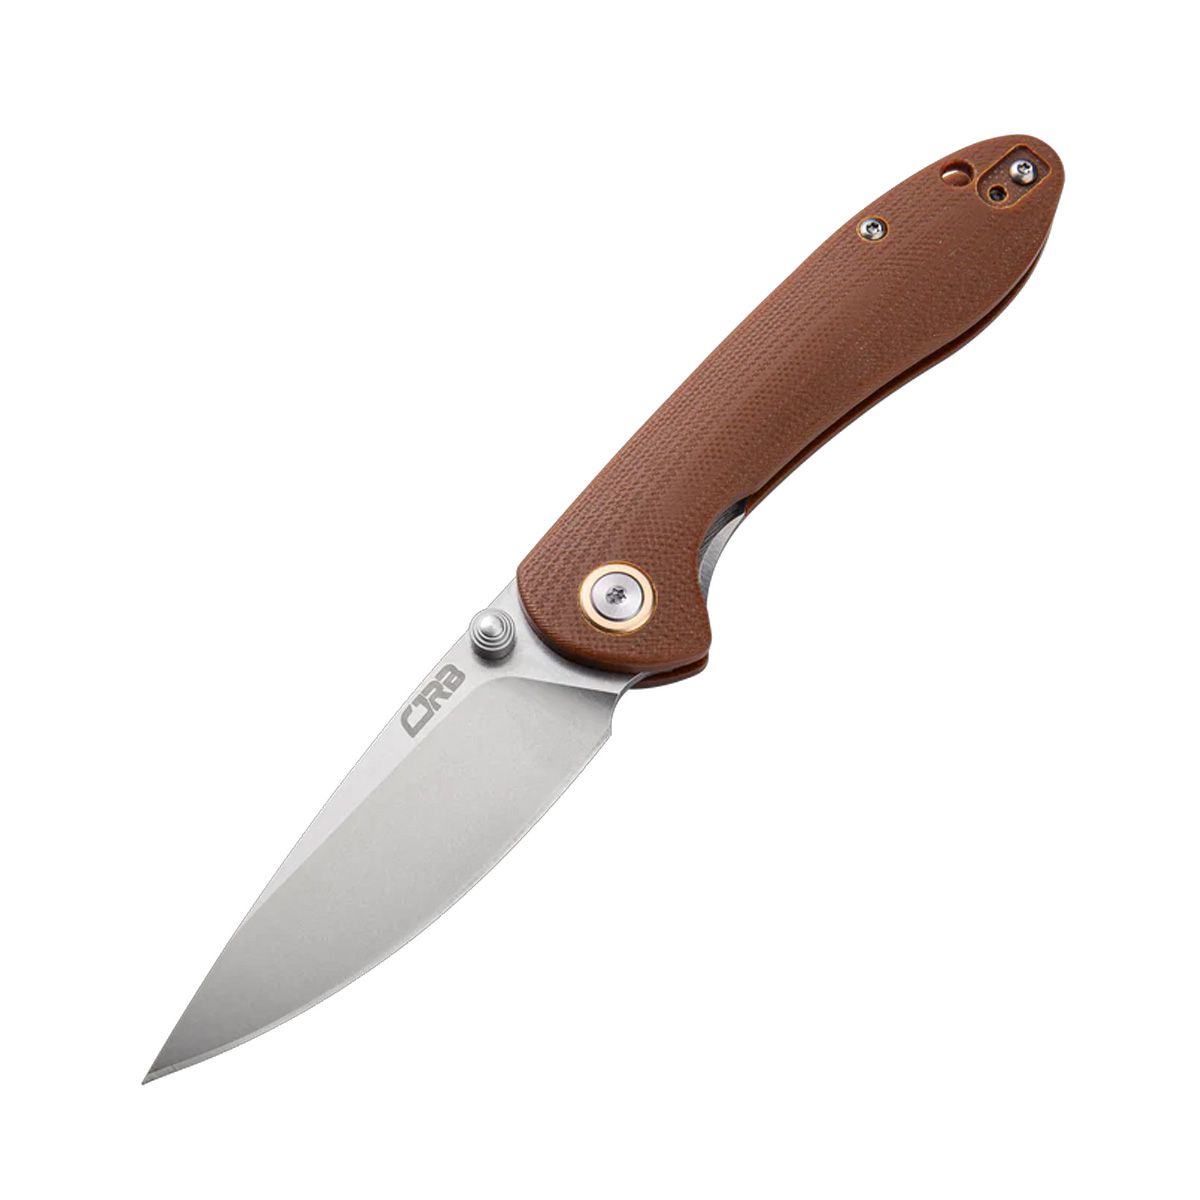 Складной нож CJRB Small Feldspar, сталь D2, рукоять G10, коричневый, Бренды, CJRB Cutlery